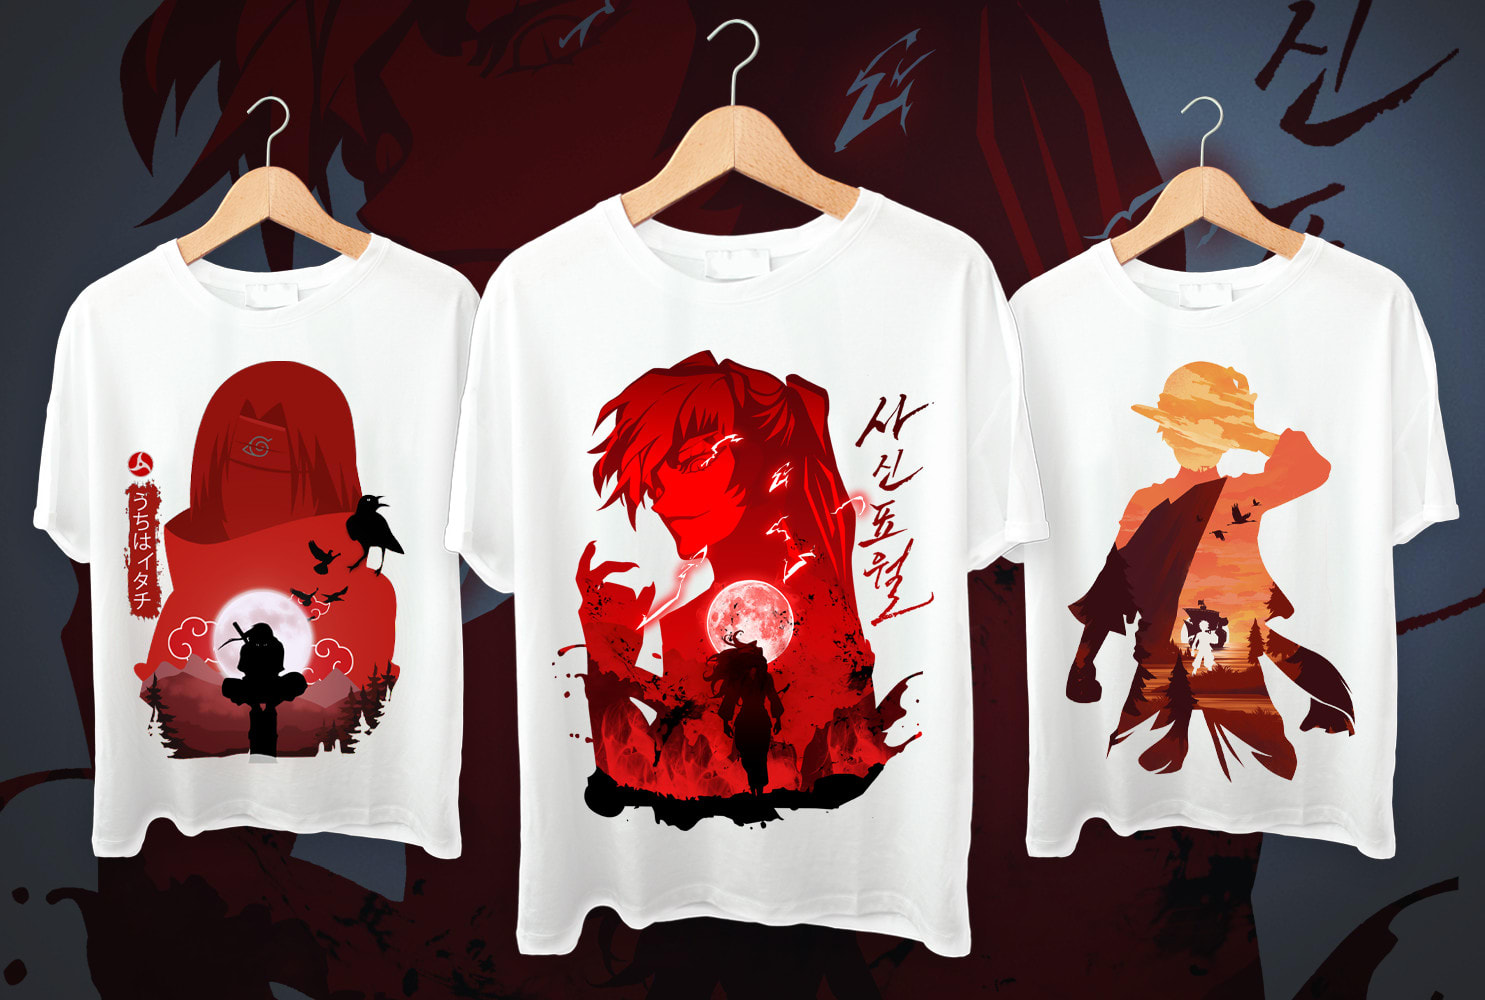 Anime T Shirt Images - Free Download on Freepik